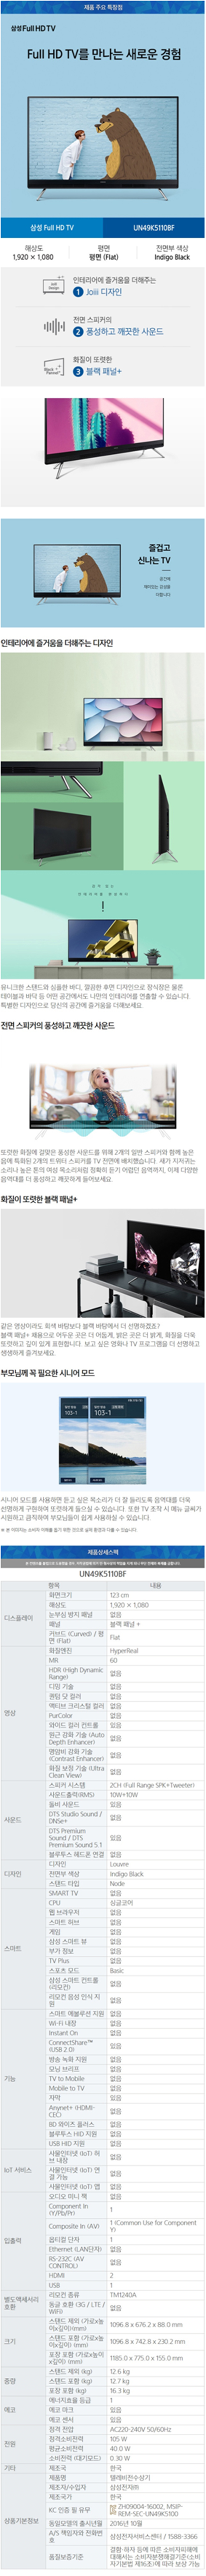 용산케이블 - 삼성 49인치 LED TV (UN49K5110BF) 상세보기